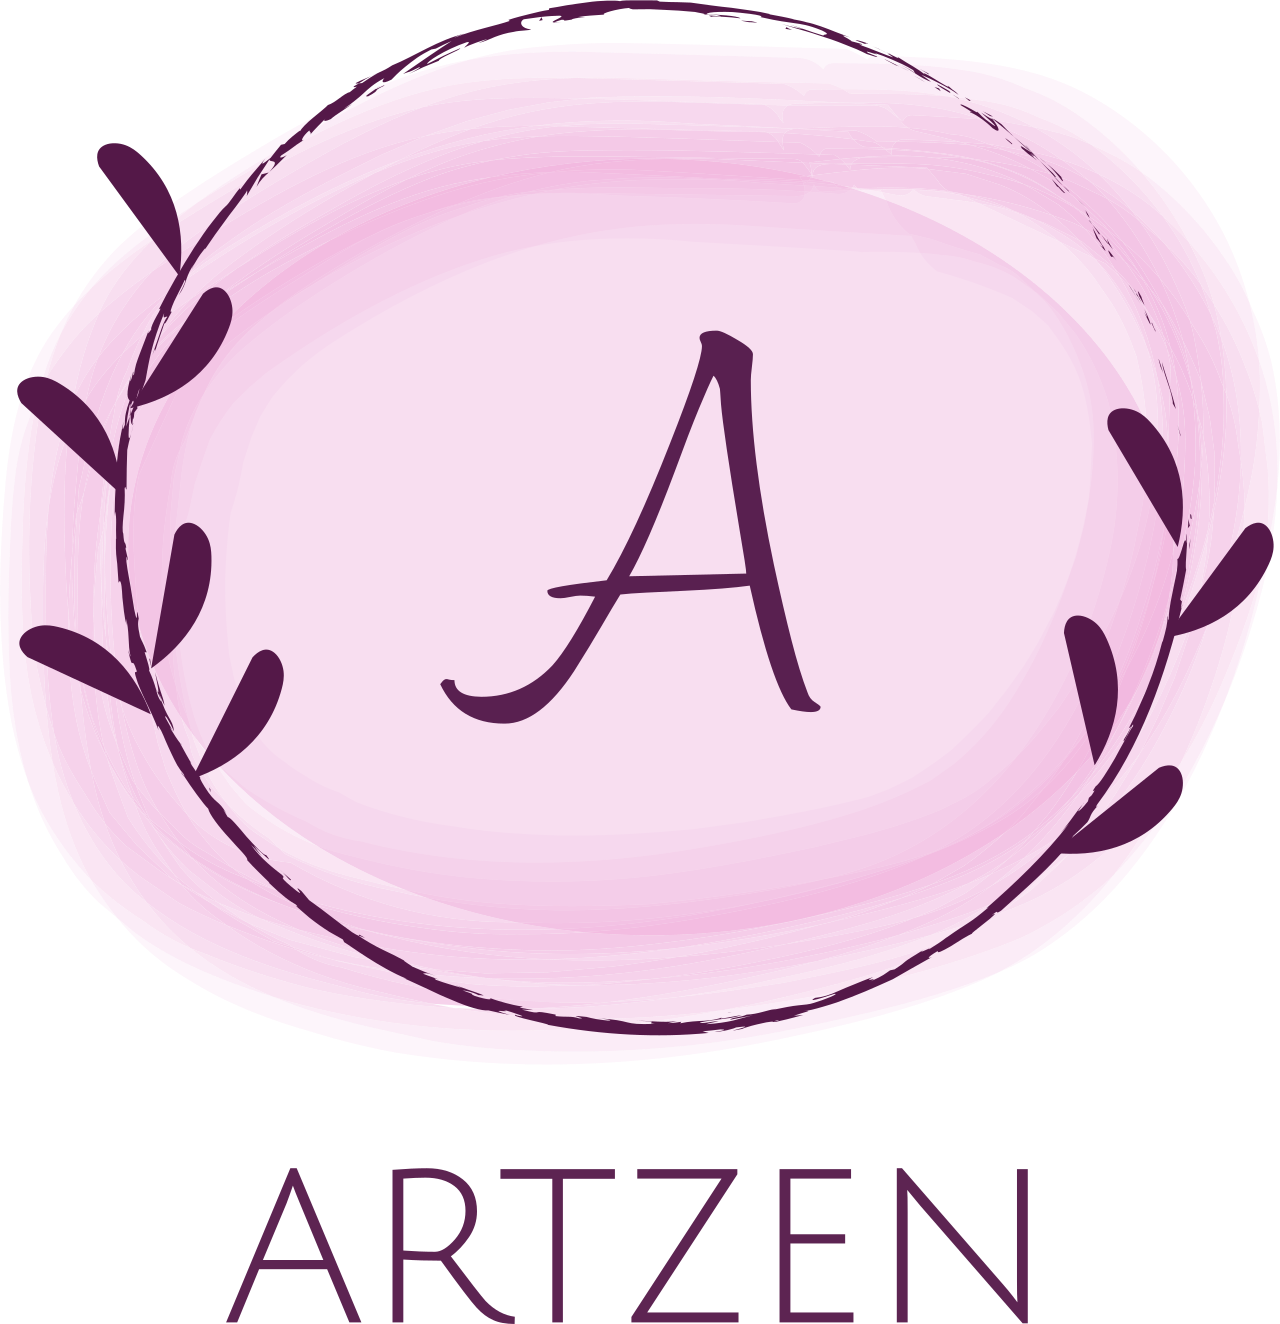 artzen's logo